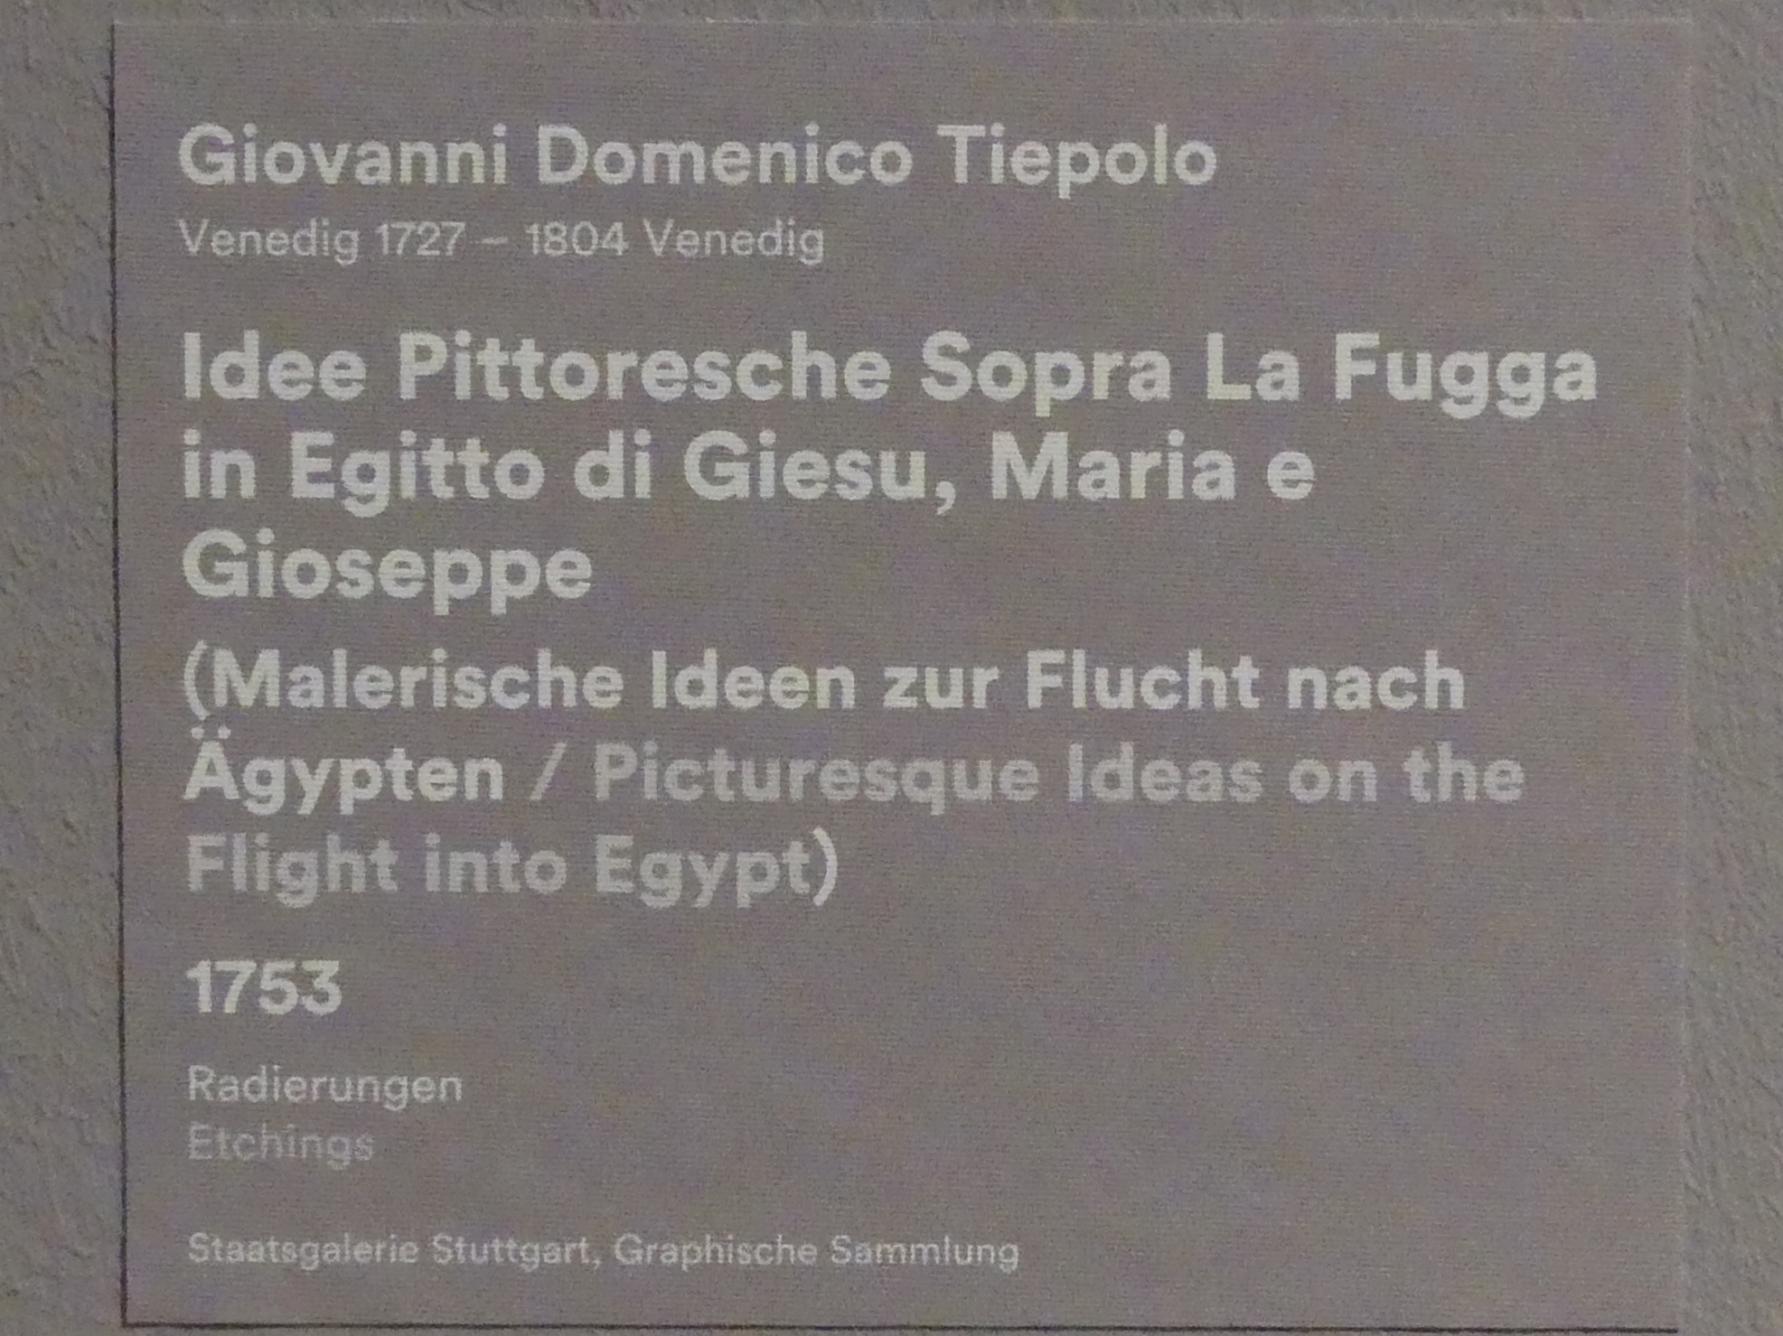 Giovanni Domenico Tiepolo (1743–1785), Malerische Ideen zur Flucht nach Ägapten, Stuttgart, Staatsgalerie, Ausstellung "Tiepolo"  vom 11.10.2019 - 02.02.2020, Saal 10: Späte Werke, 1753, Bild 5/5